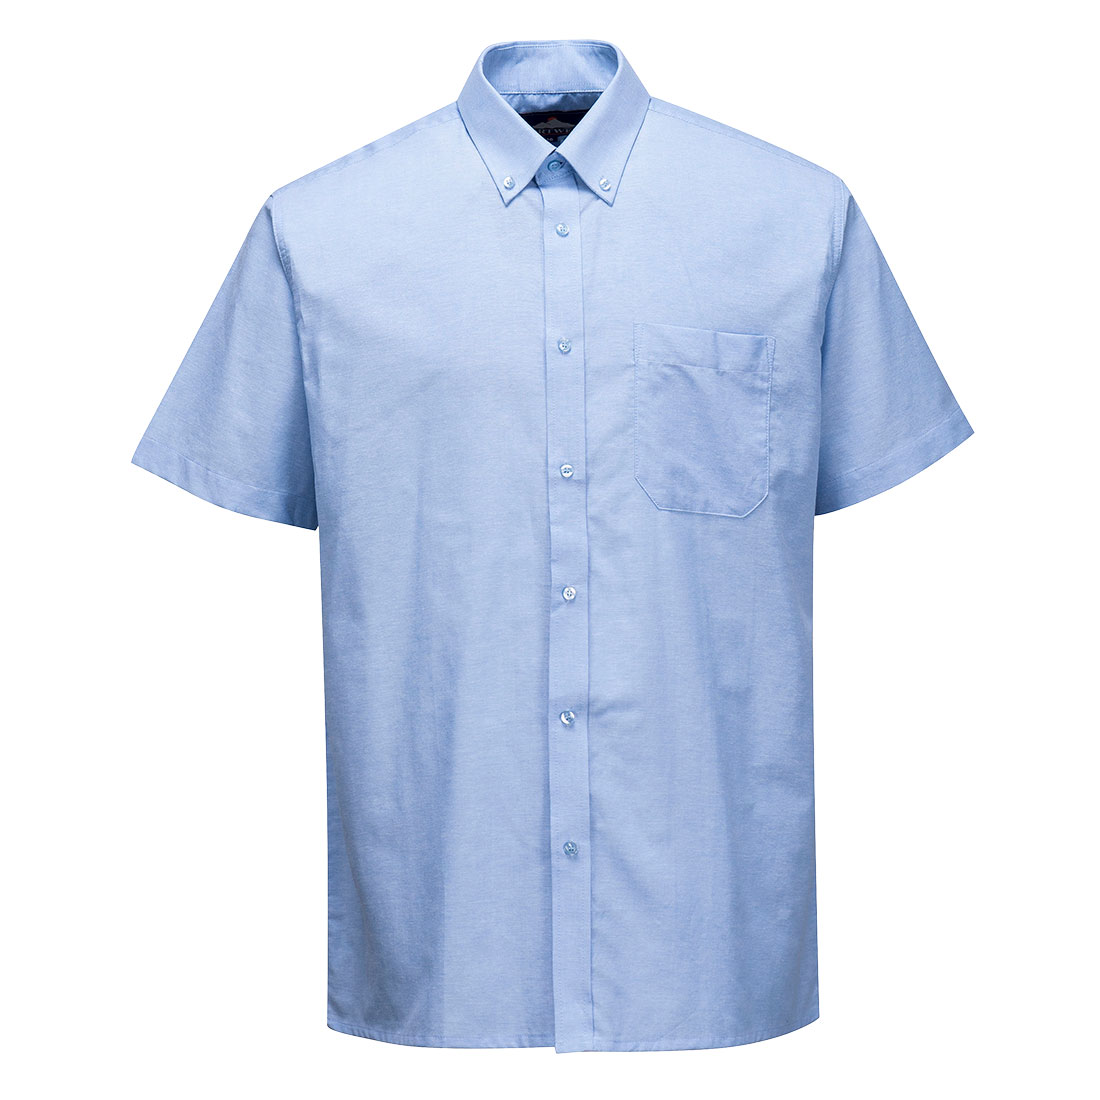 Рубашка форменная ФСБ голубая длинный рукав